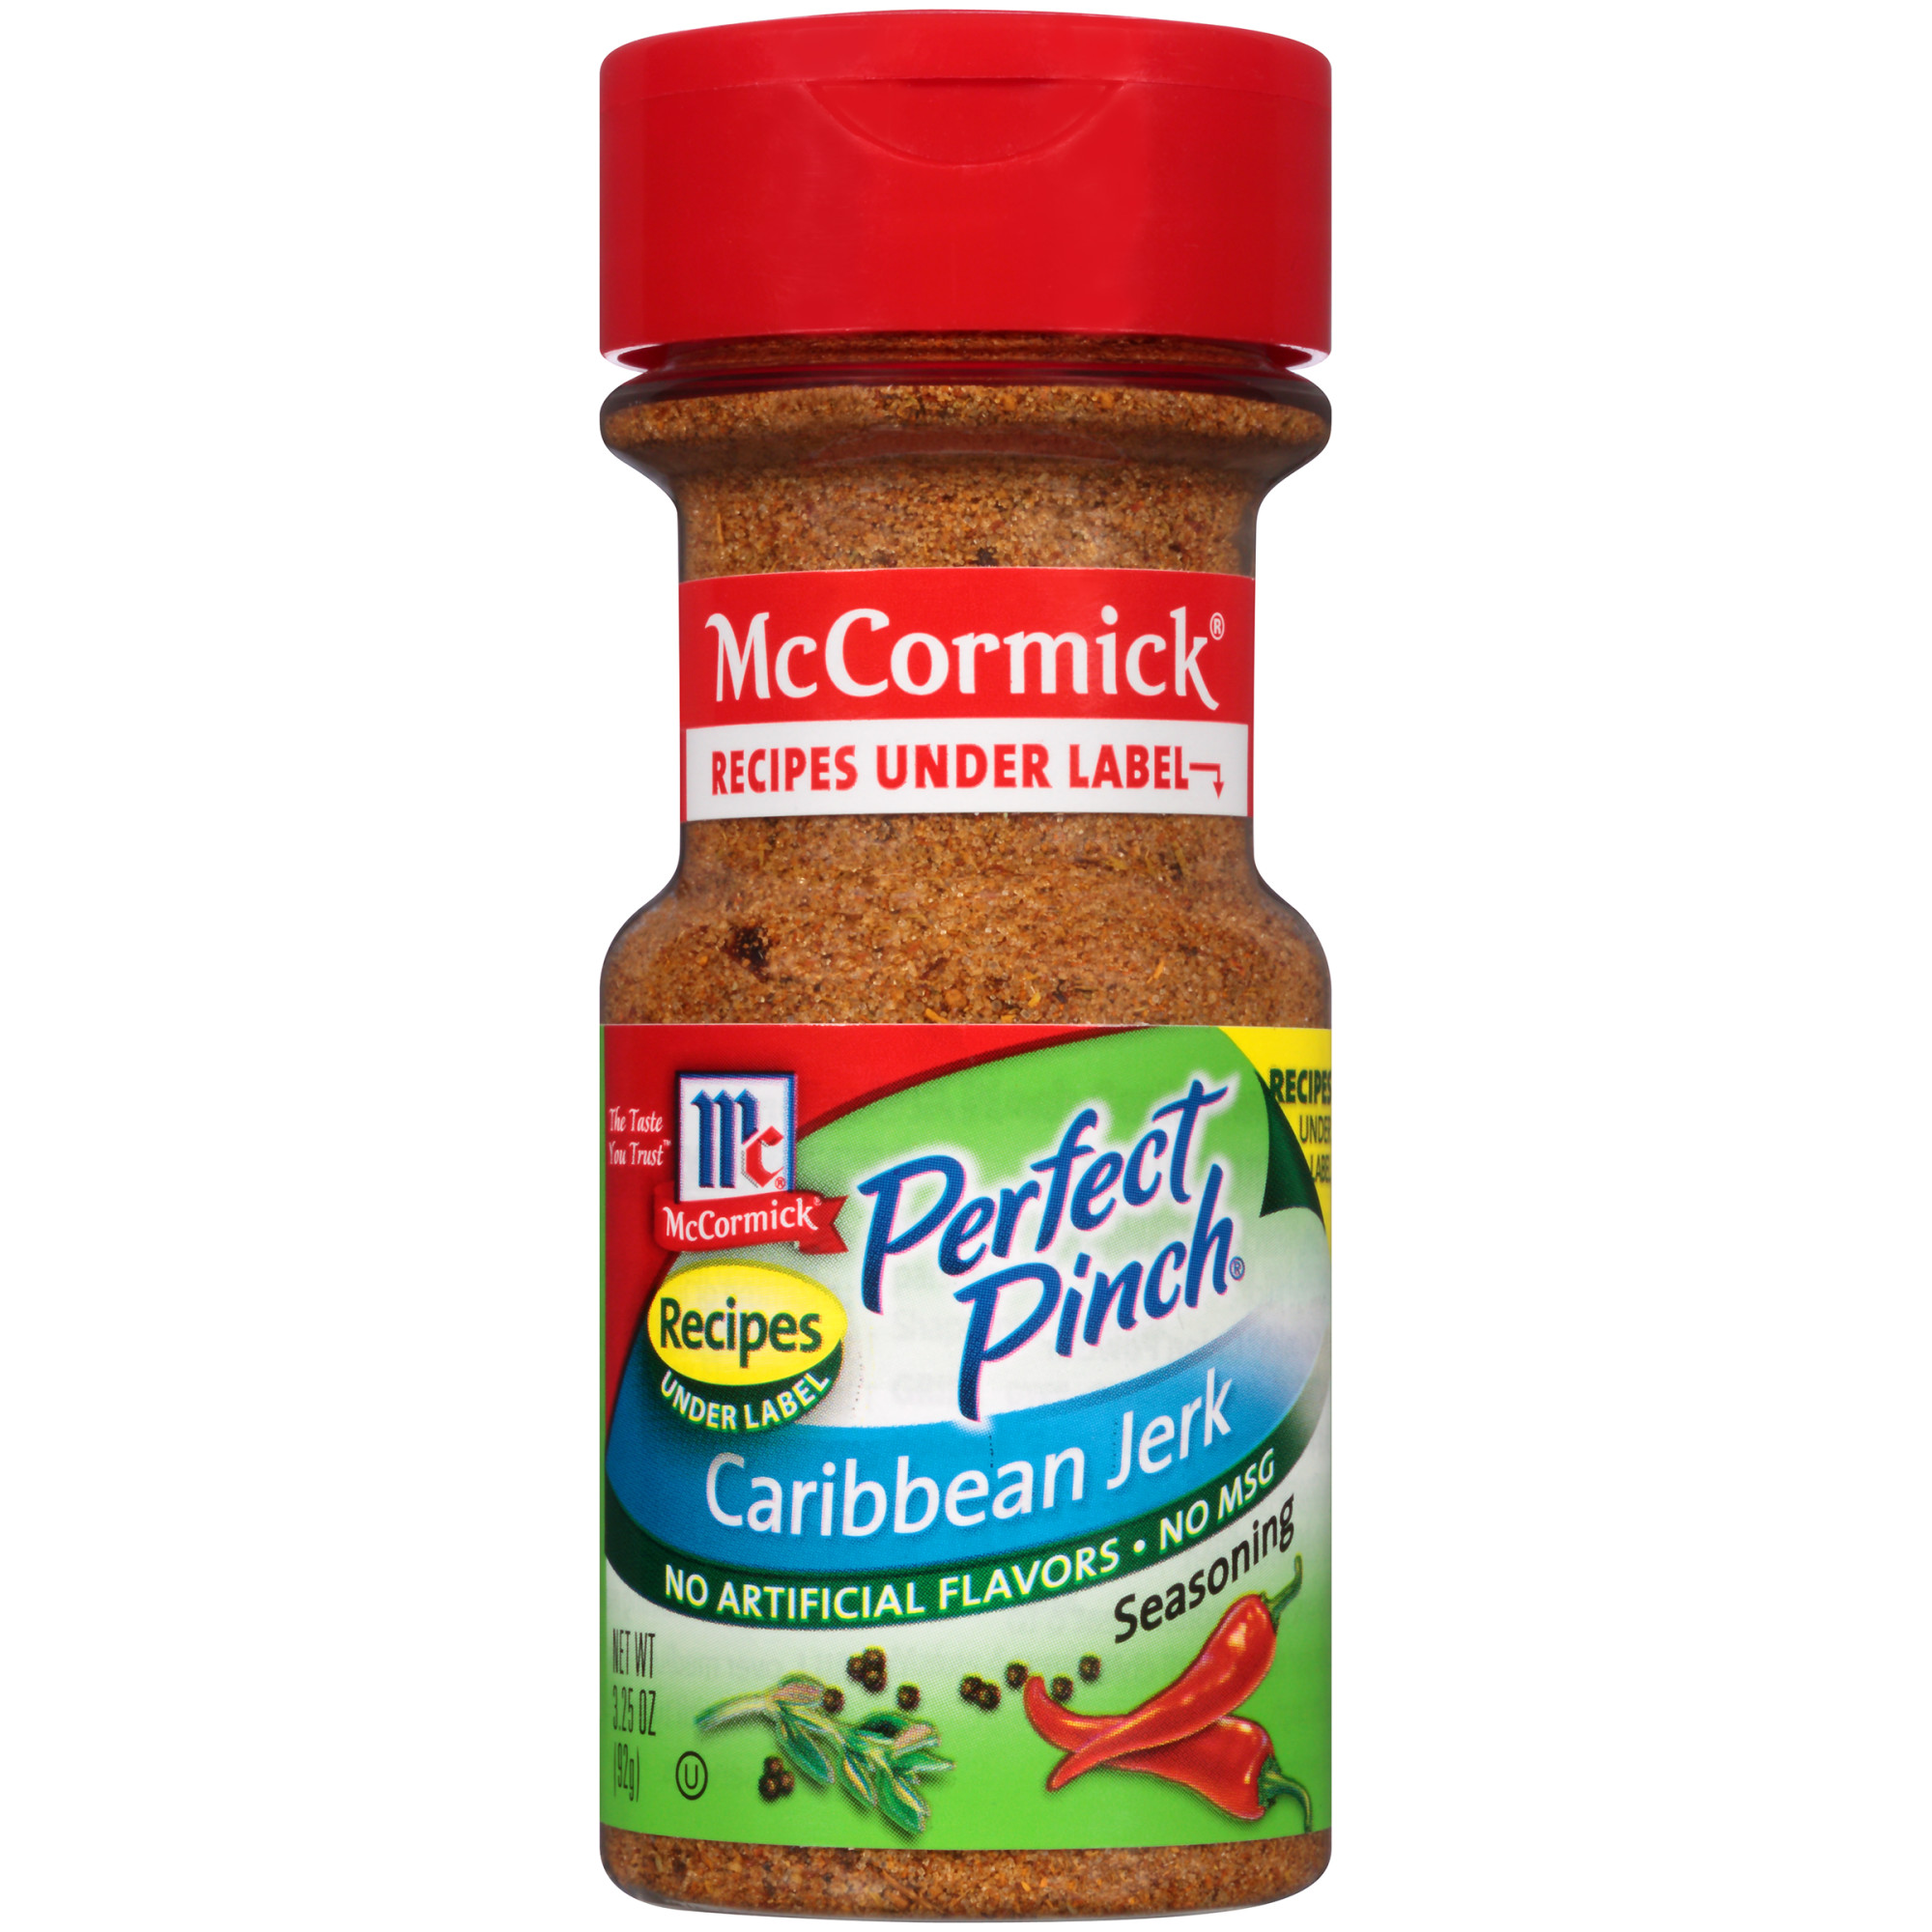 Mccormick caribbean jerk seasoning discontinued